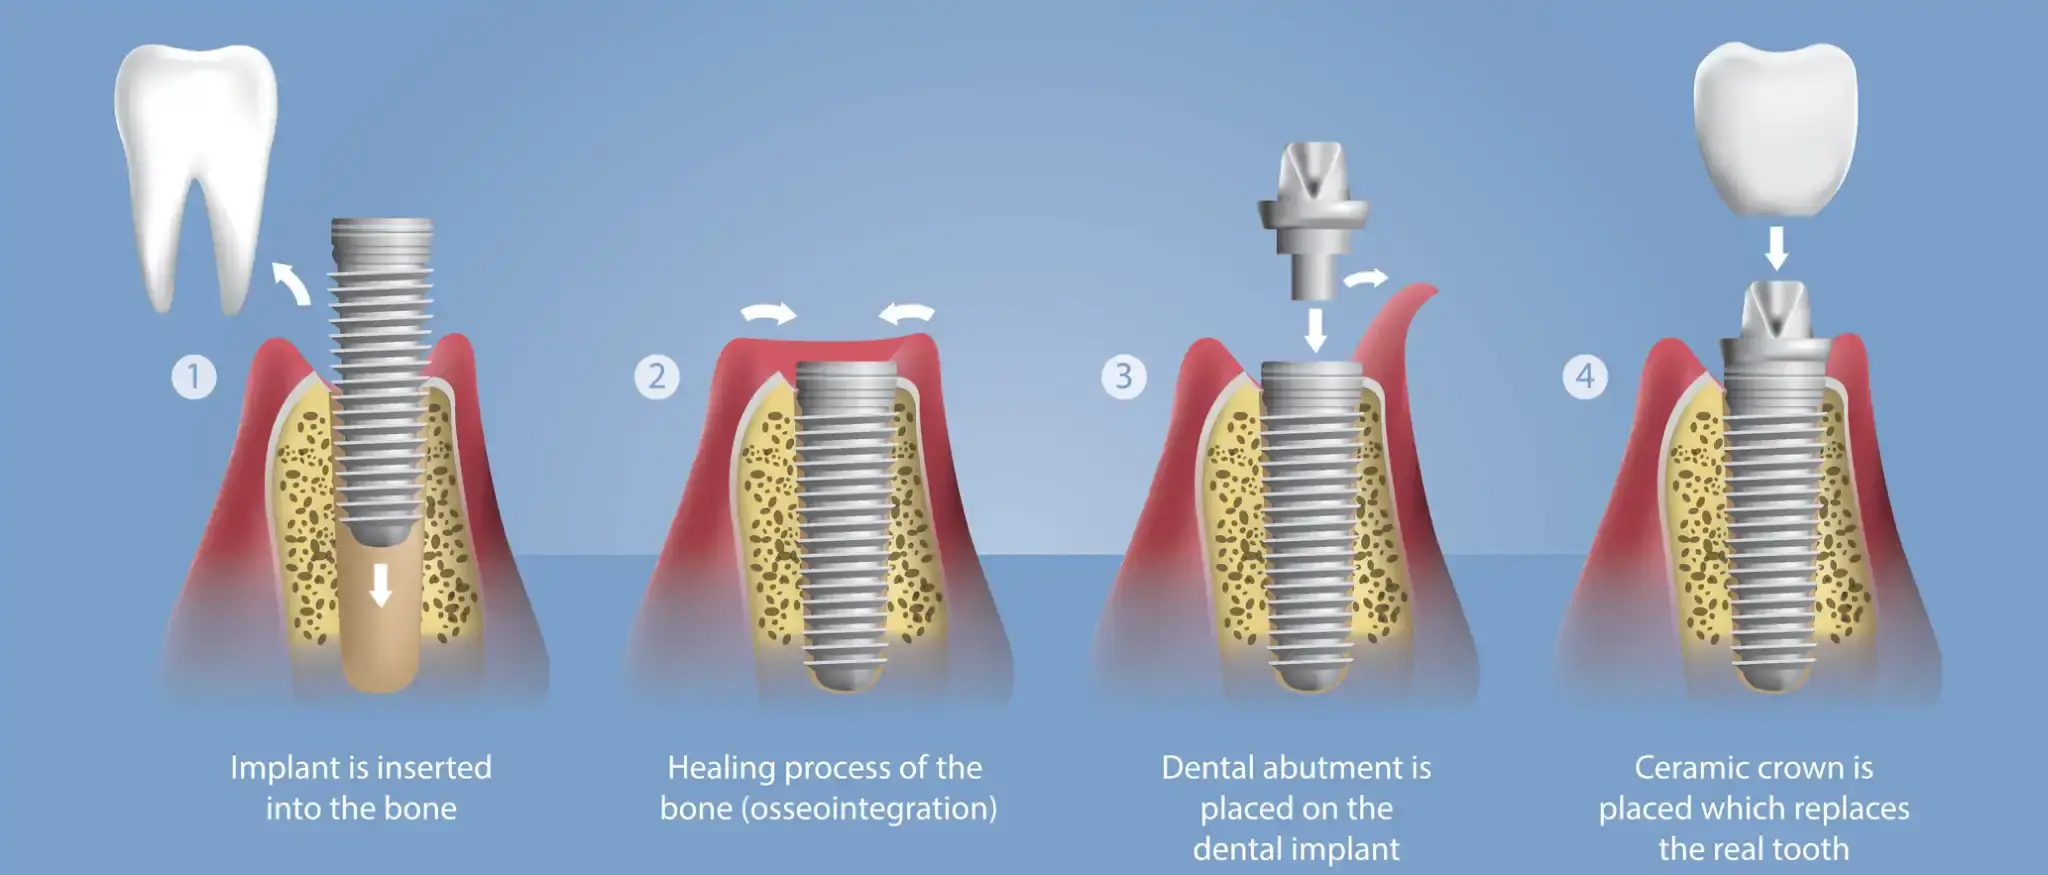 الفرق بين زراعة الاسنان والتركيب 